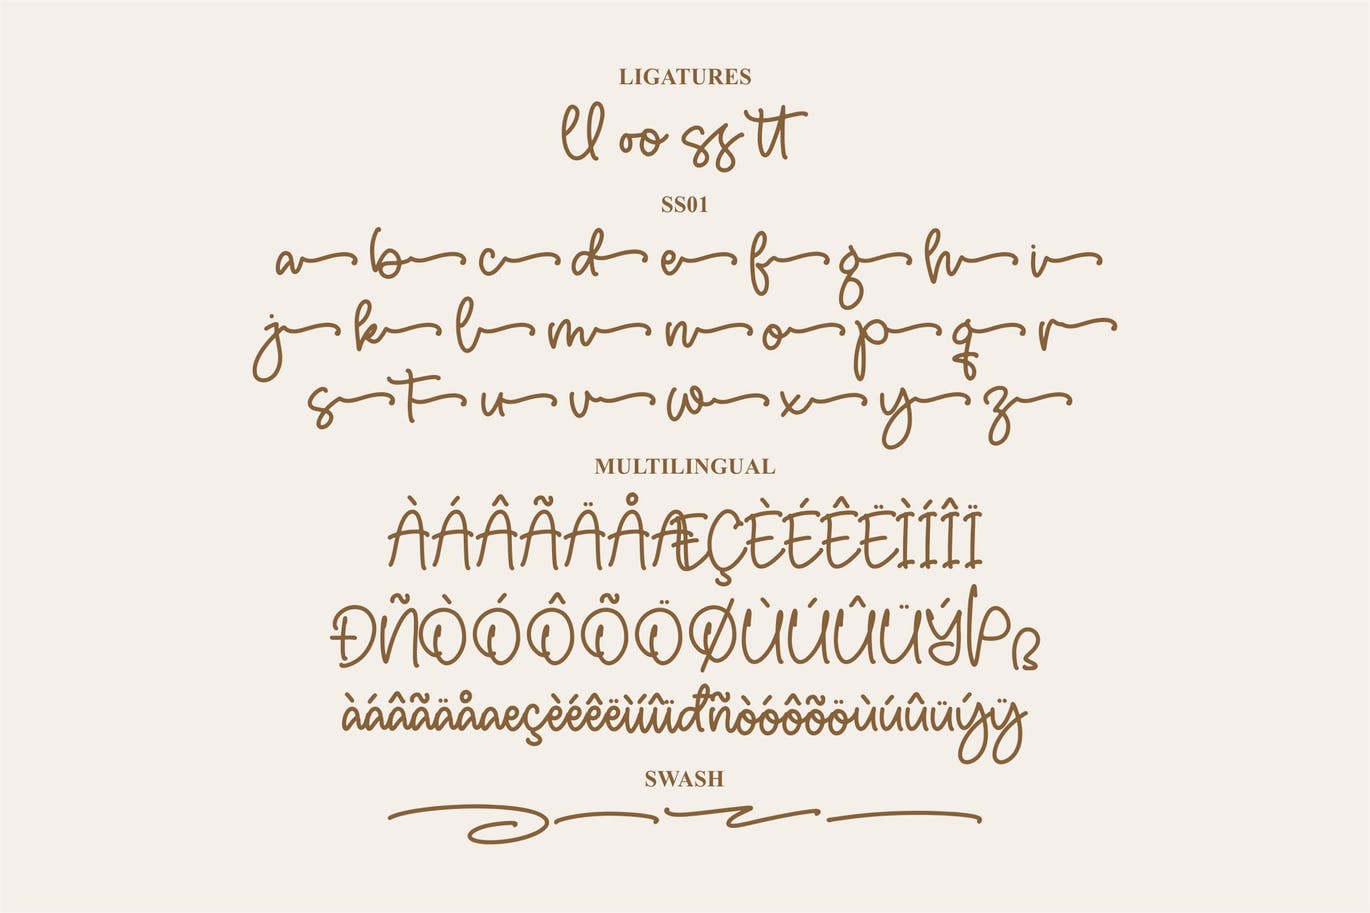 艺术连字创意字体素材 Haydenz Monoline Font 设计素材 第8张